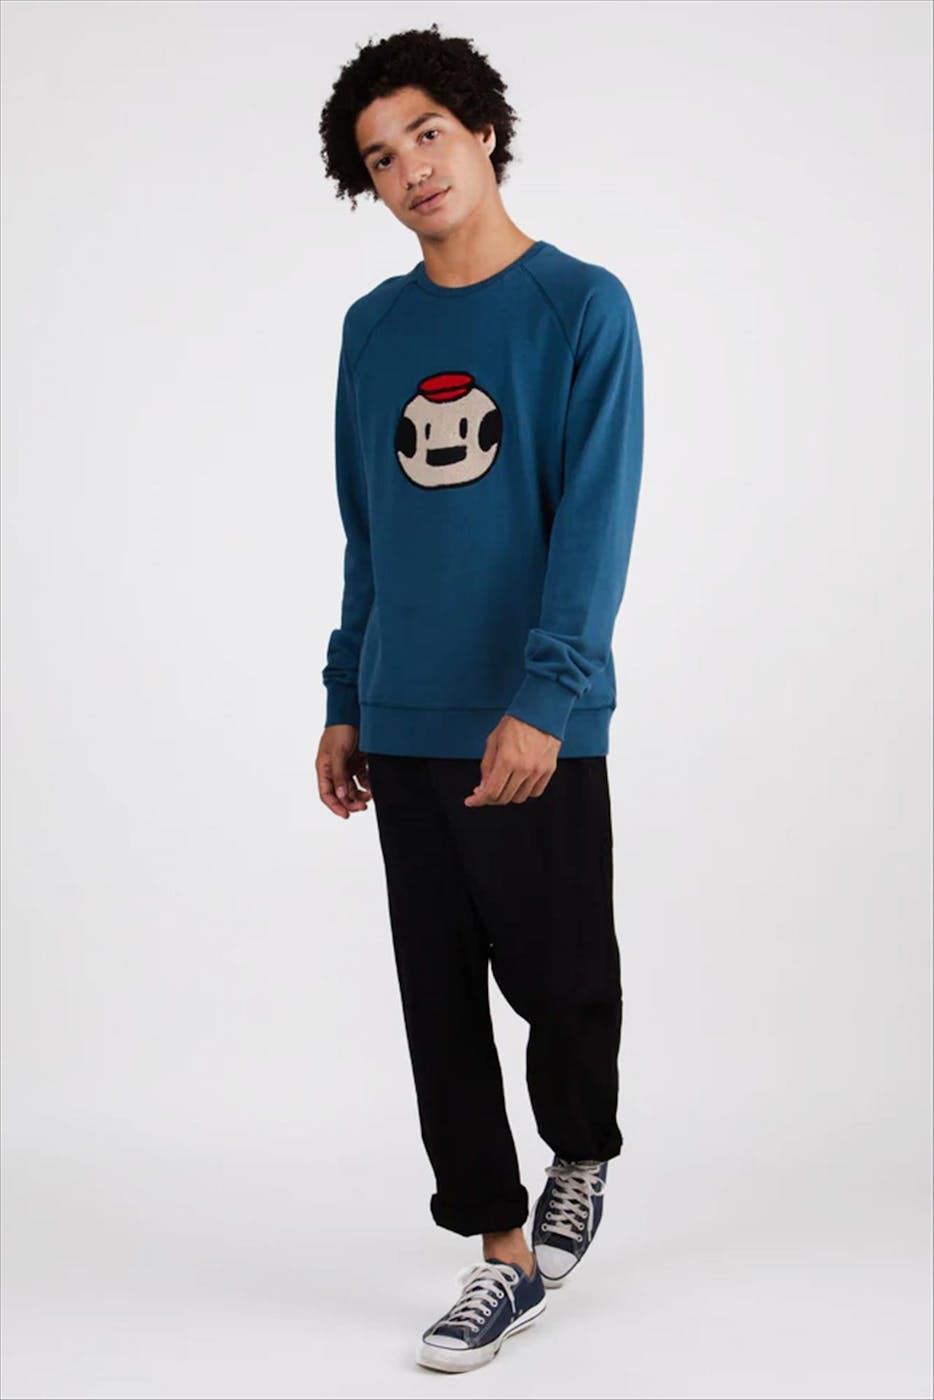 Brava - Blauwe Dickie sweater